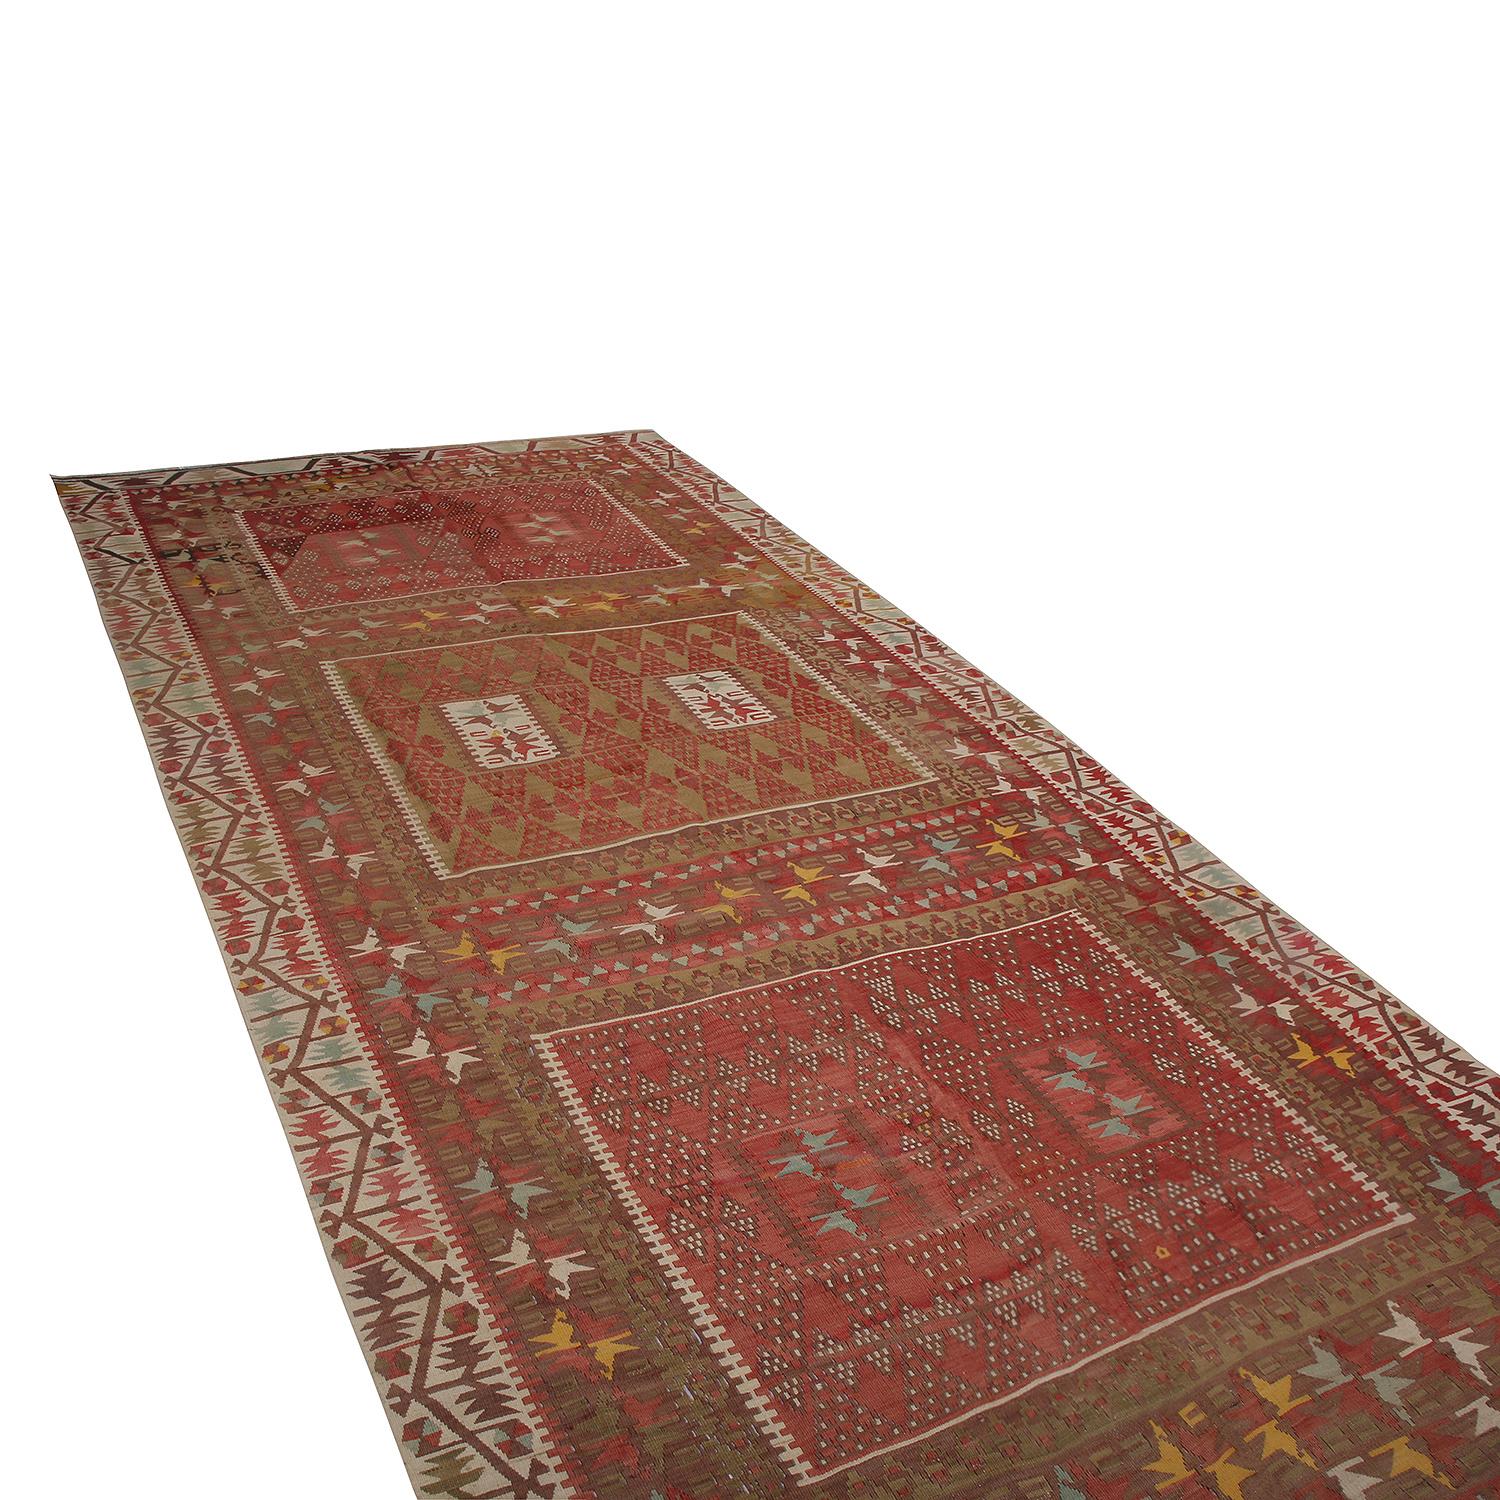 Tissé à la main en Turquie entre 1950 et 1960, ce Kilim vintage en laine de 5 x 11 provient de la ville de Kayseri, localité d'Anatolie centrale qui a inspiré le coloris traditionnel classique rouge et beige-brun de cette pièce. Ce Kilim se